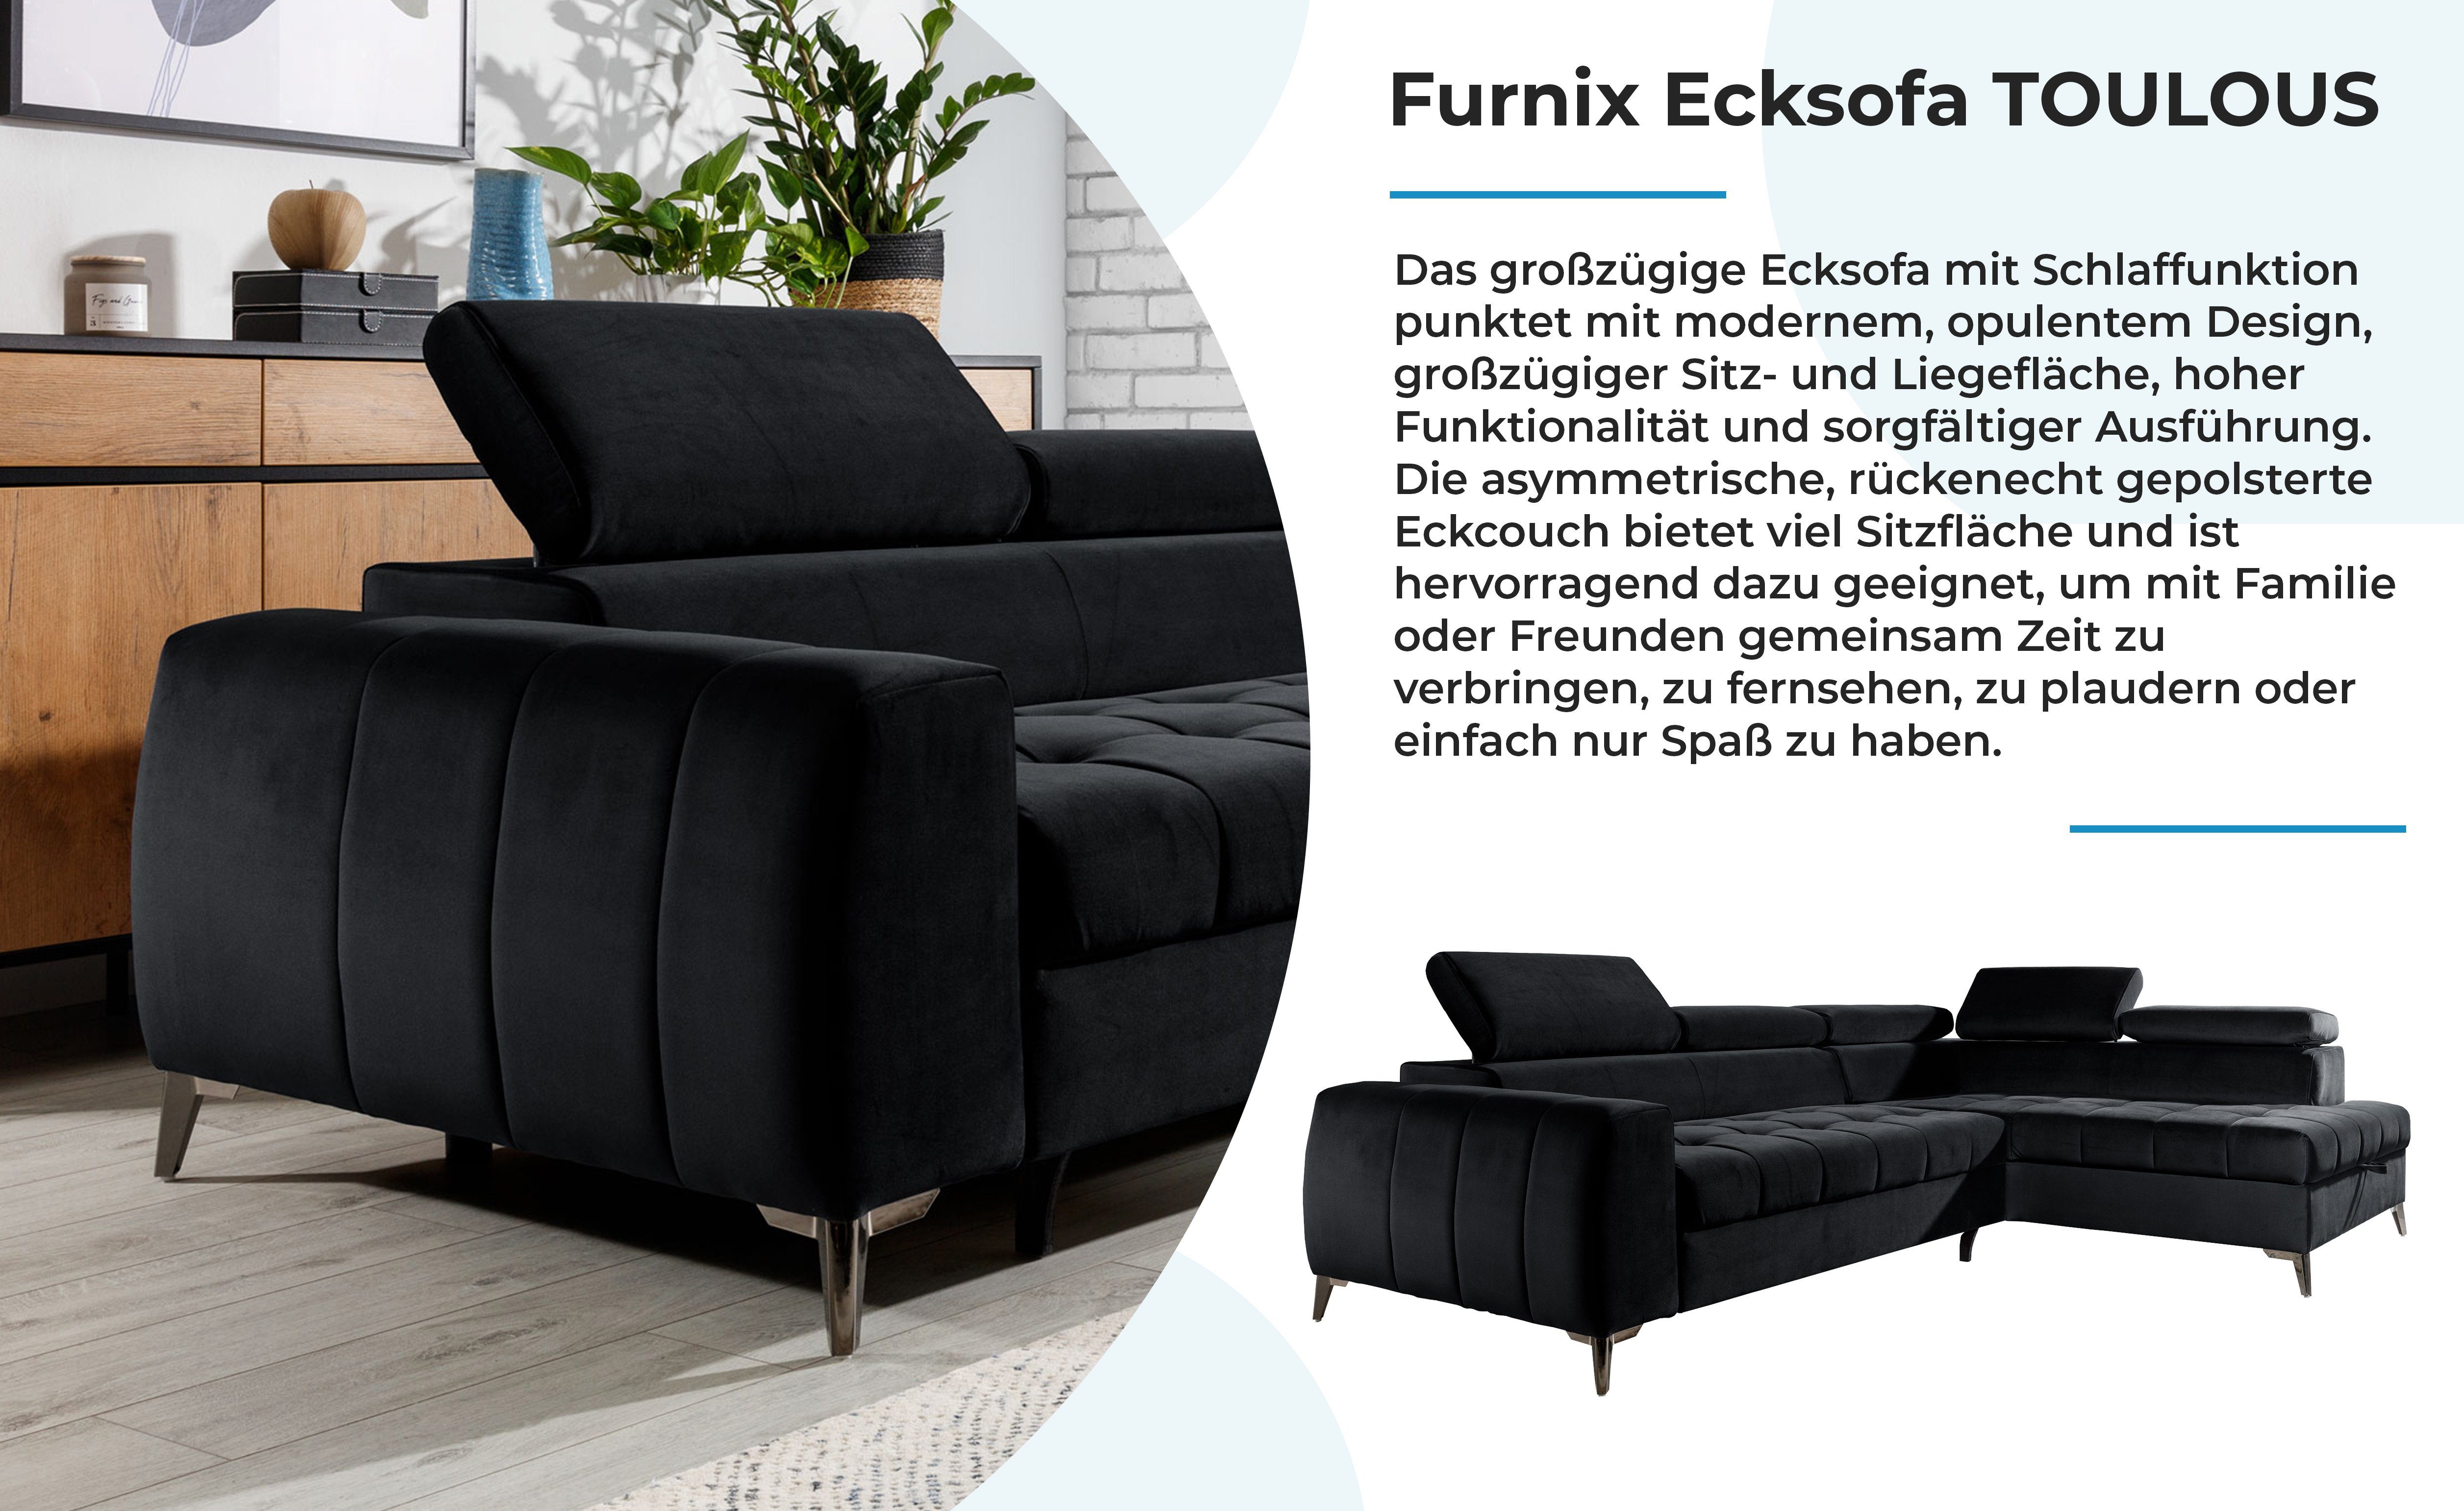 Furnix Ecksofa TOULOUS Maße: Verarbeitung x mit Schwarz DL H95 Schlaffunktion Automat hochwertige B275 Auswahl, Sofa B200 x cm